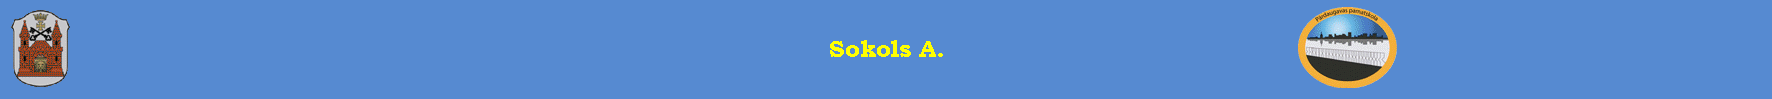 Sokols A.